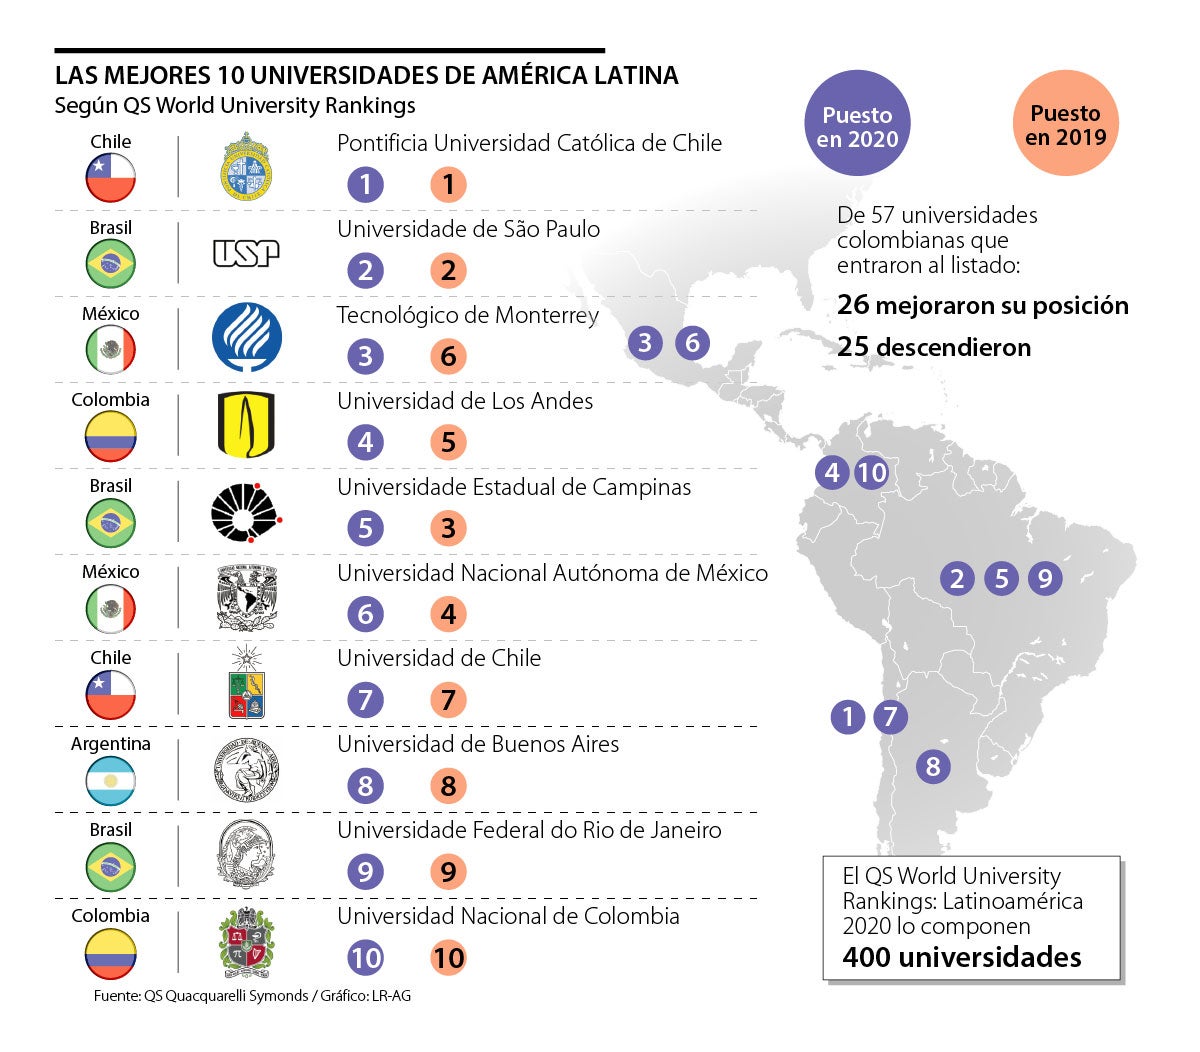 Los Andes y la Nacional, entre las mejores 10 universidades de América